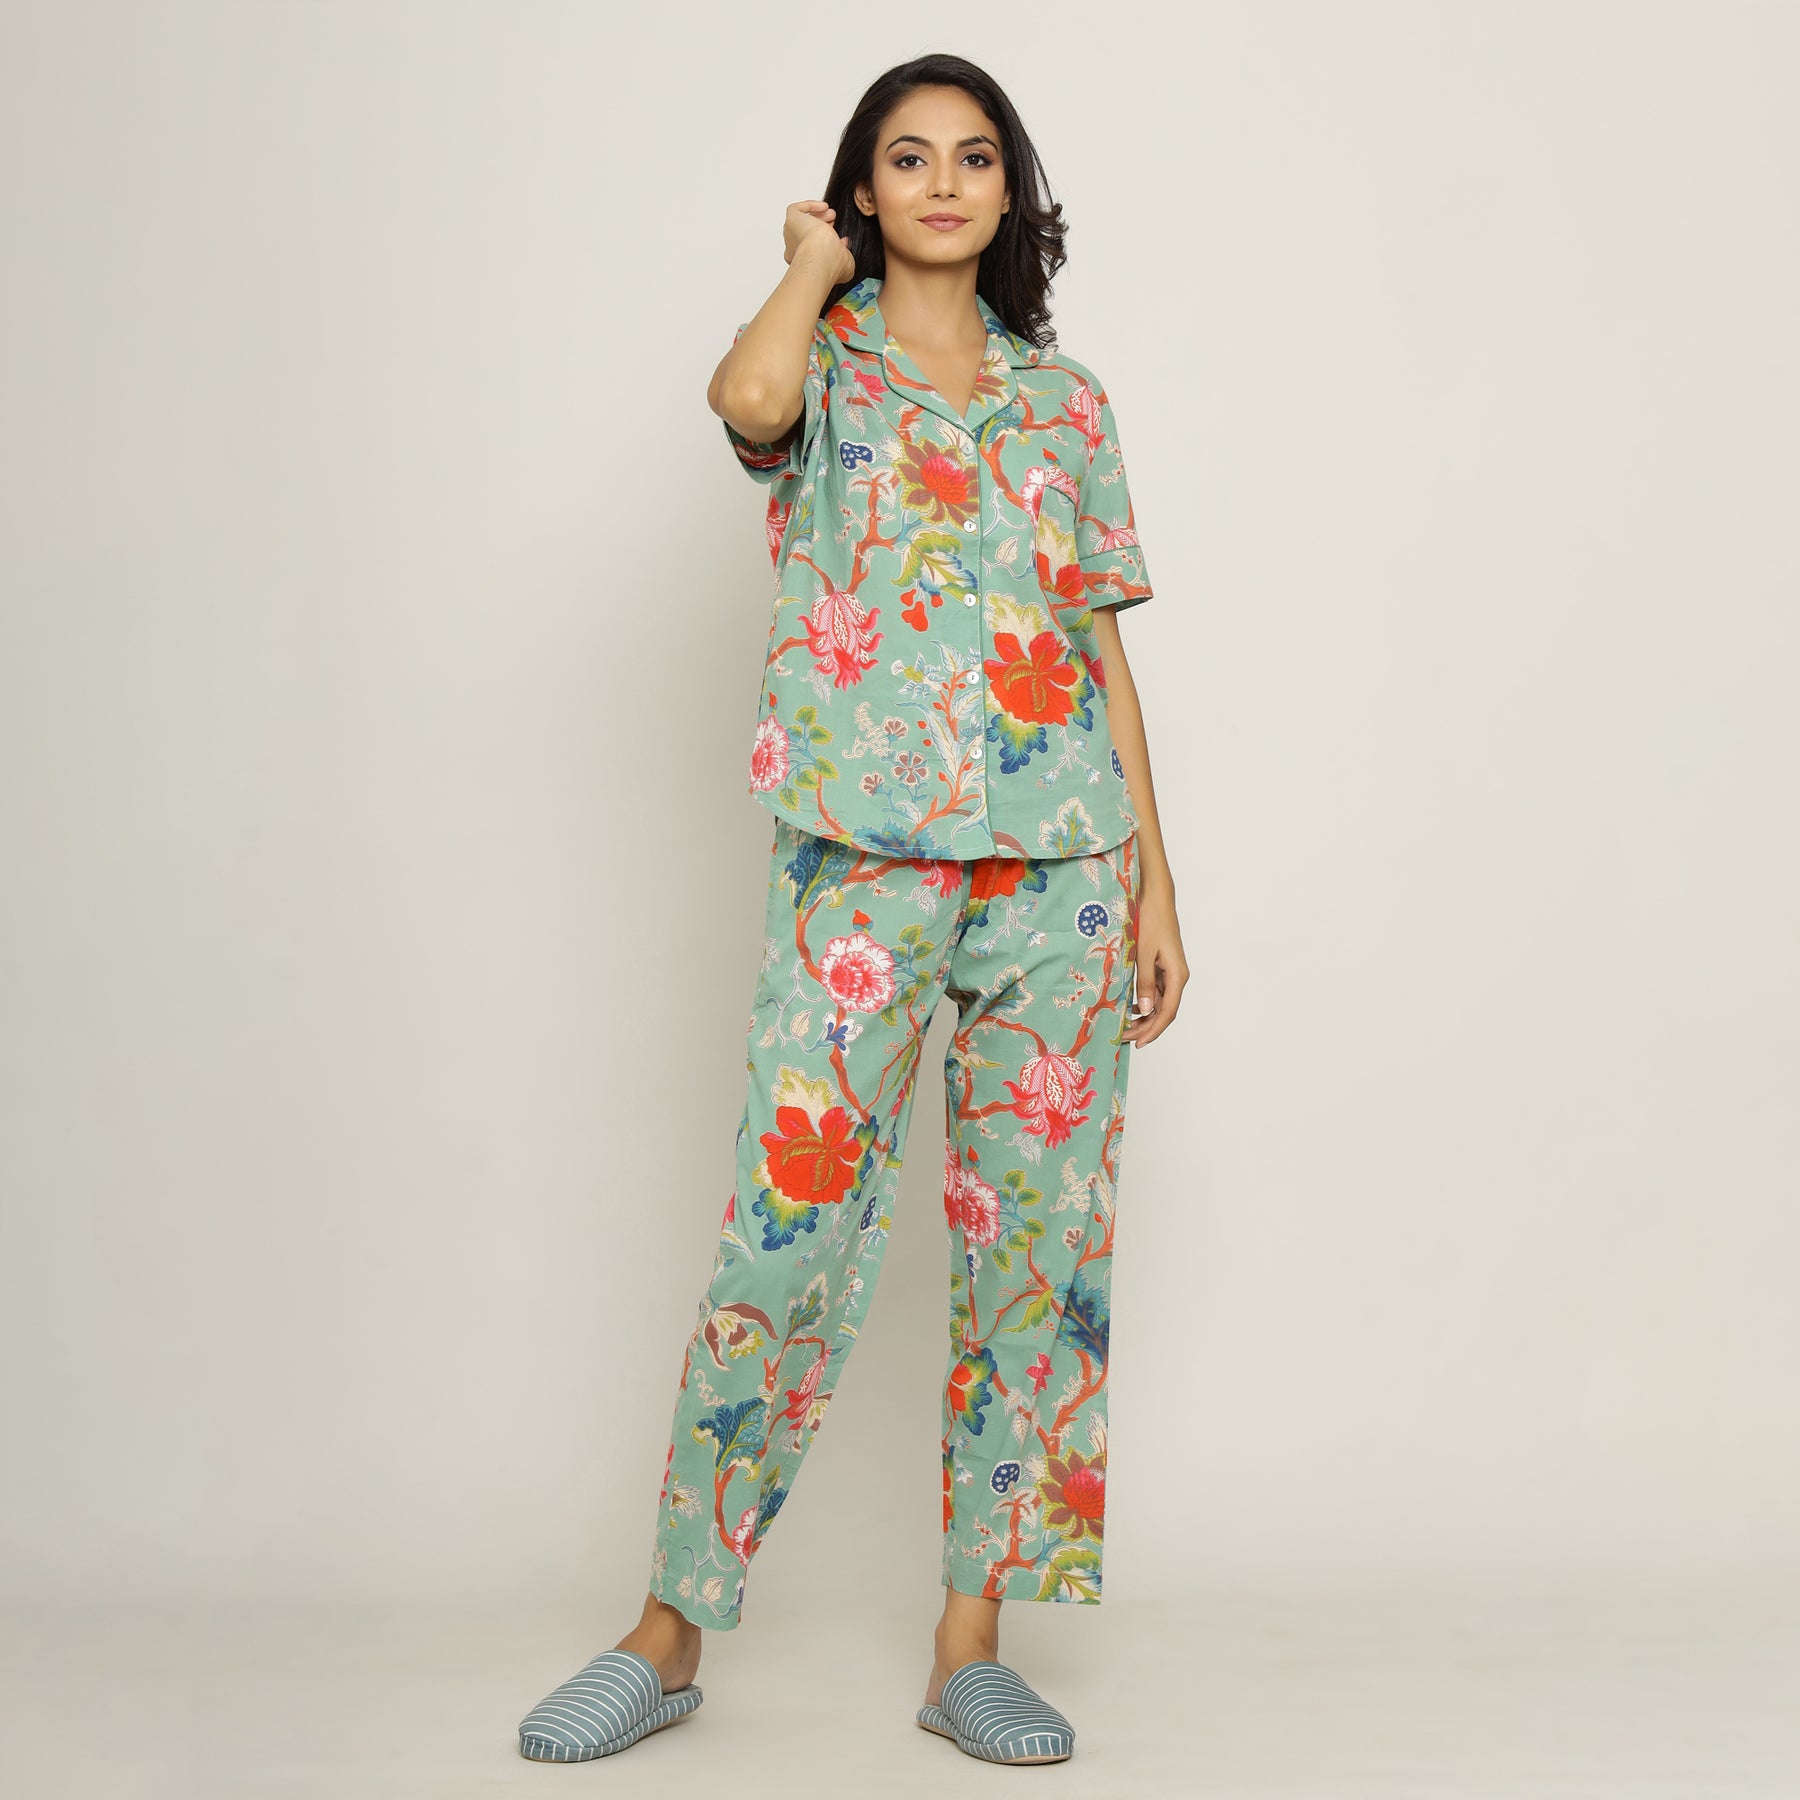 Cotton Nightwear Women Pajama Sets at Rs 600/set in Gurgaon